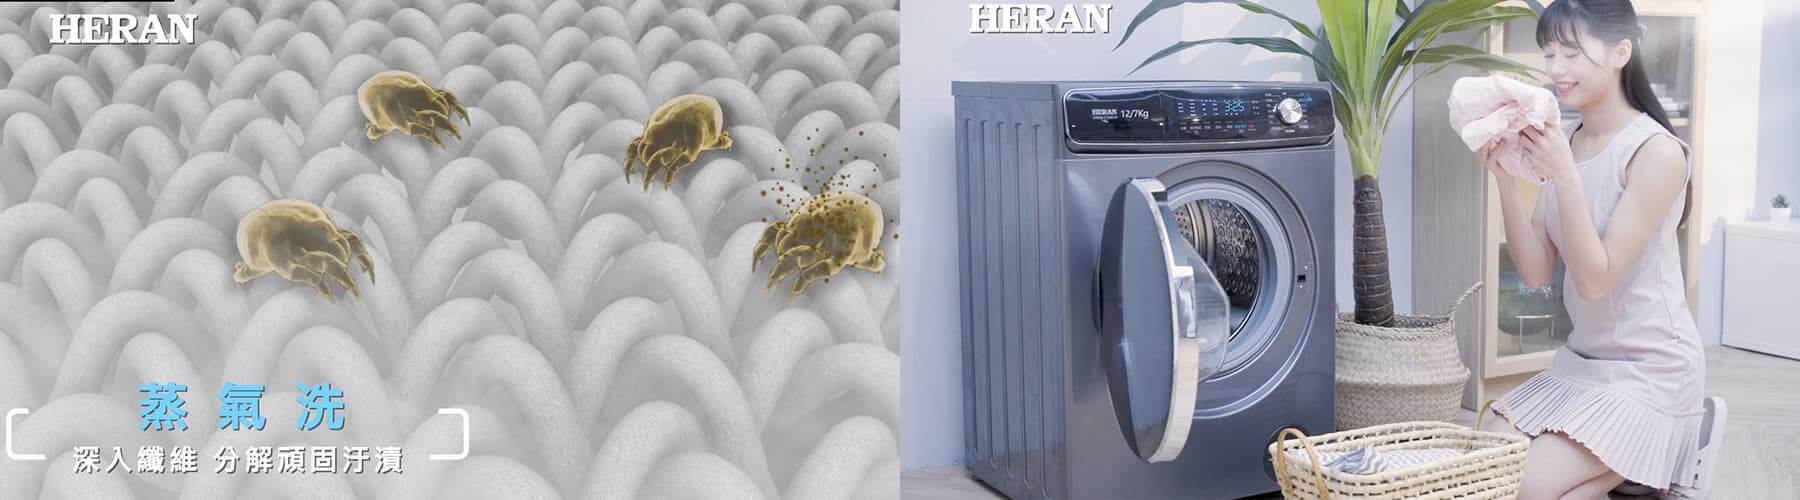 HERAN蒸氣洗滾筒式洗衣機產品介紹影片-4